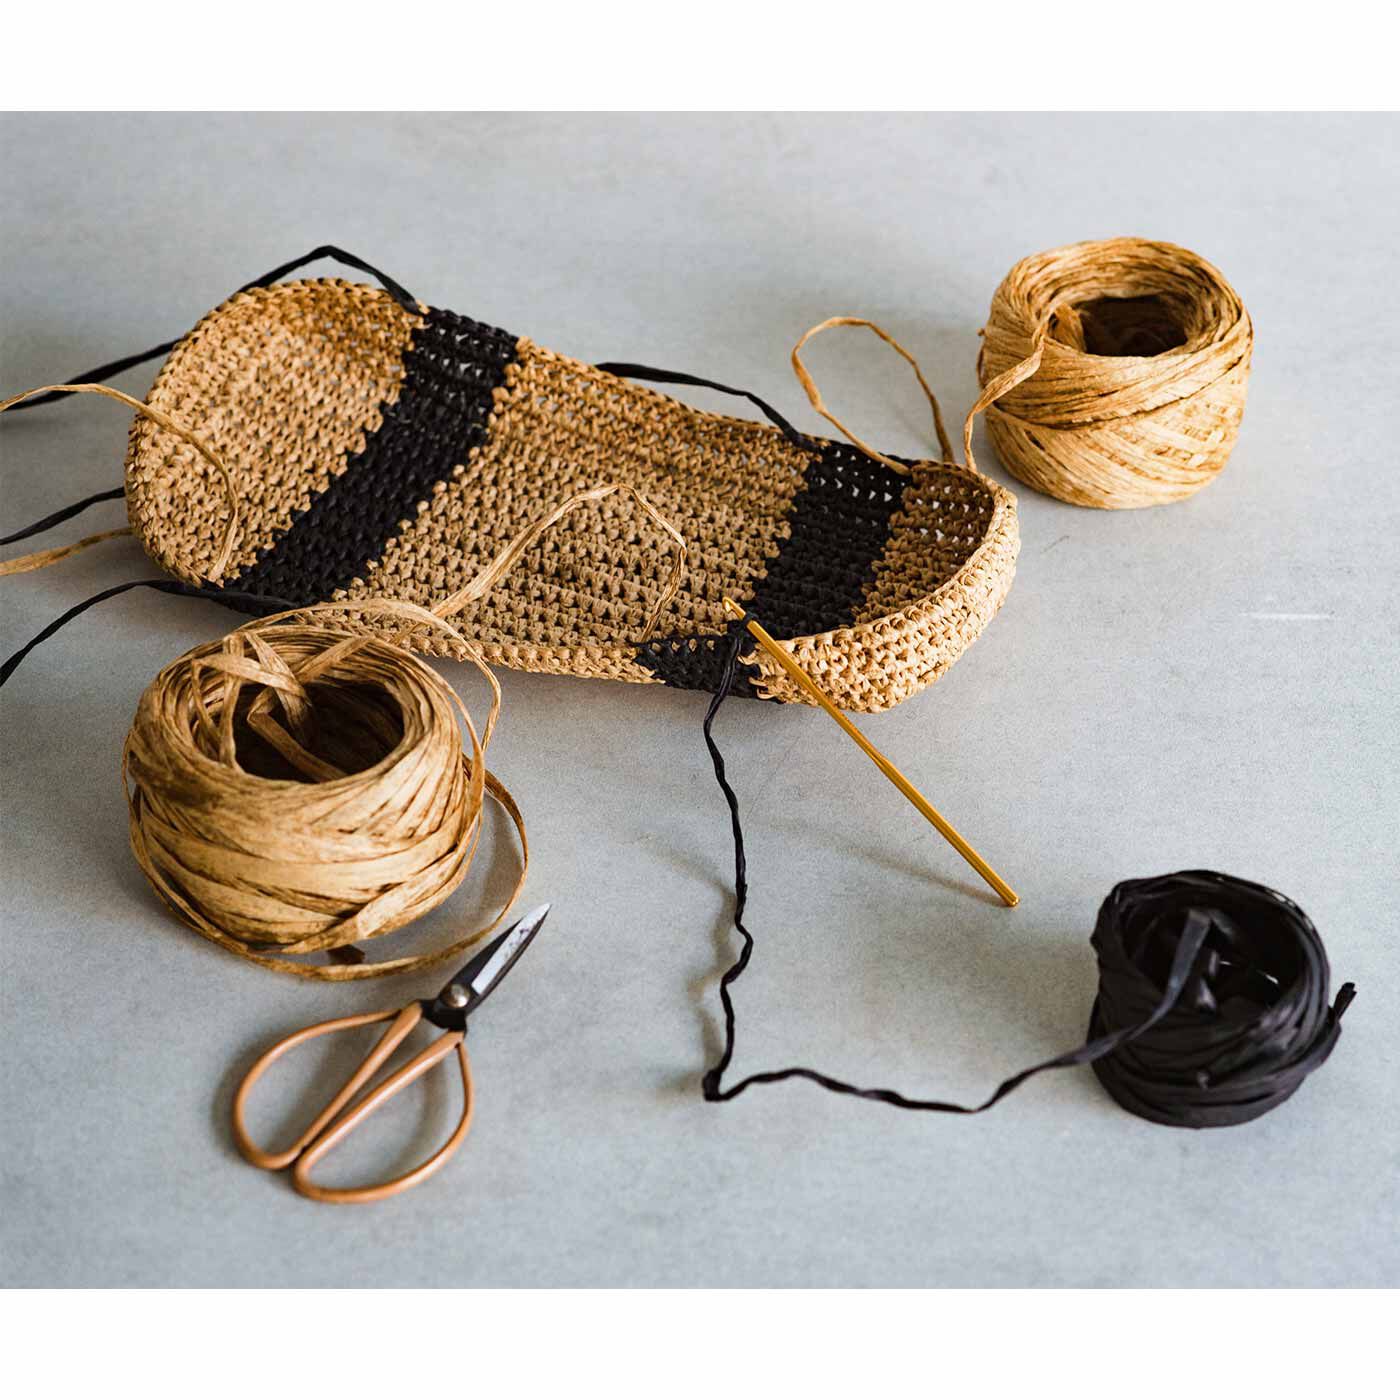 クチュリエ|軽くて丈夫なマニラヘンプヤーンで編む かぎ針編みバッグの会|密度の高いこま編みで底部分から編み始めます。基本的な編み方をコツコツ繰り返すだけなので簡単。